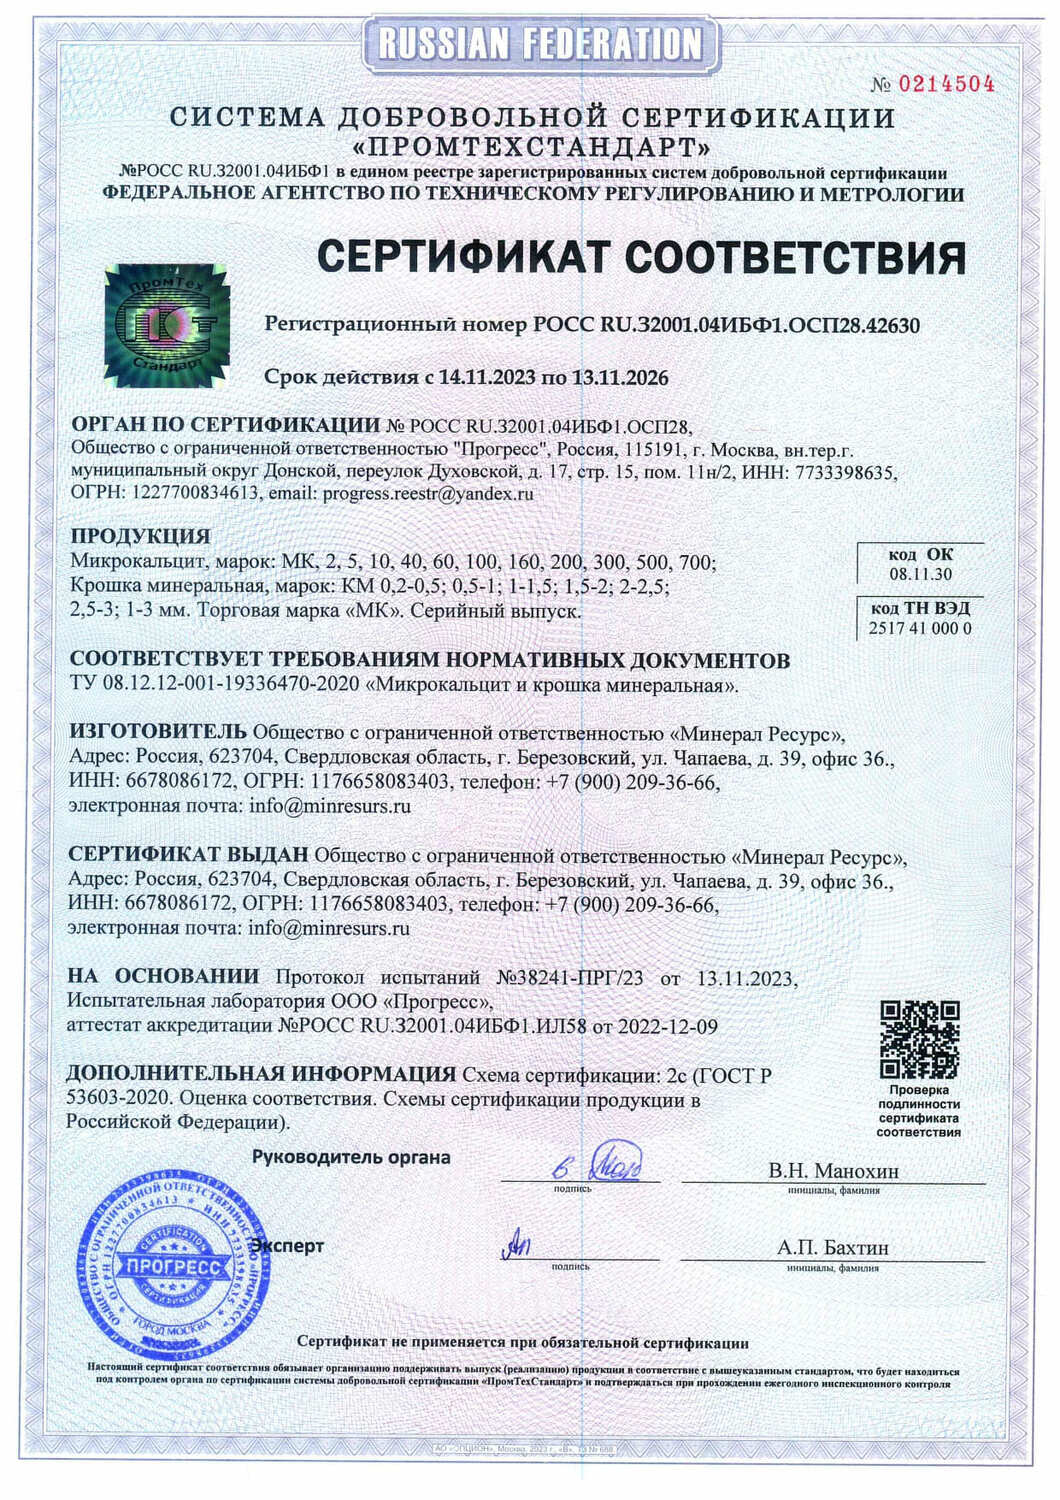 Сертификат микрокальцит - Минерал Ресурс